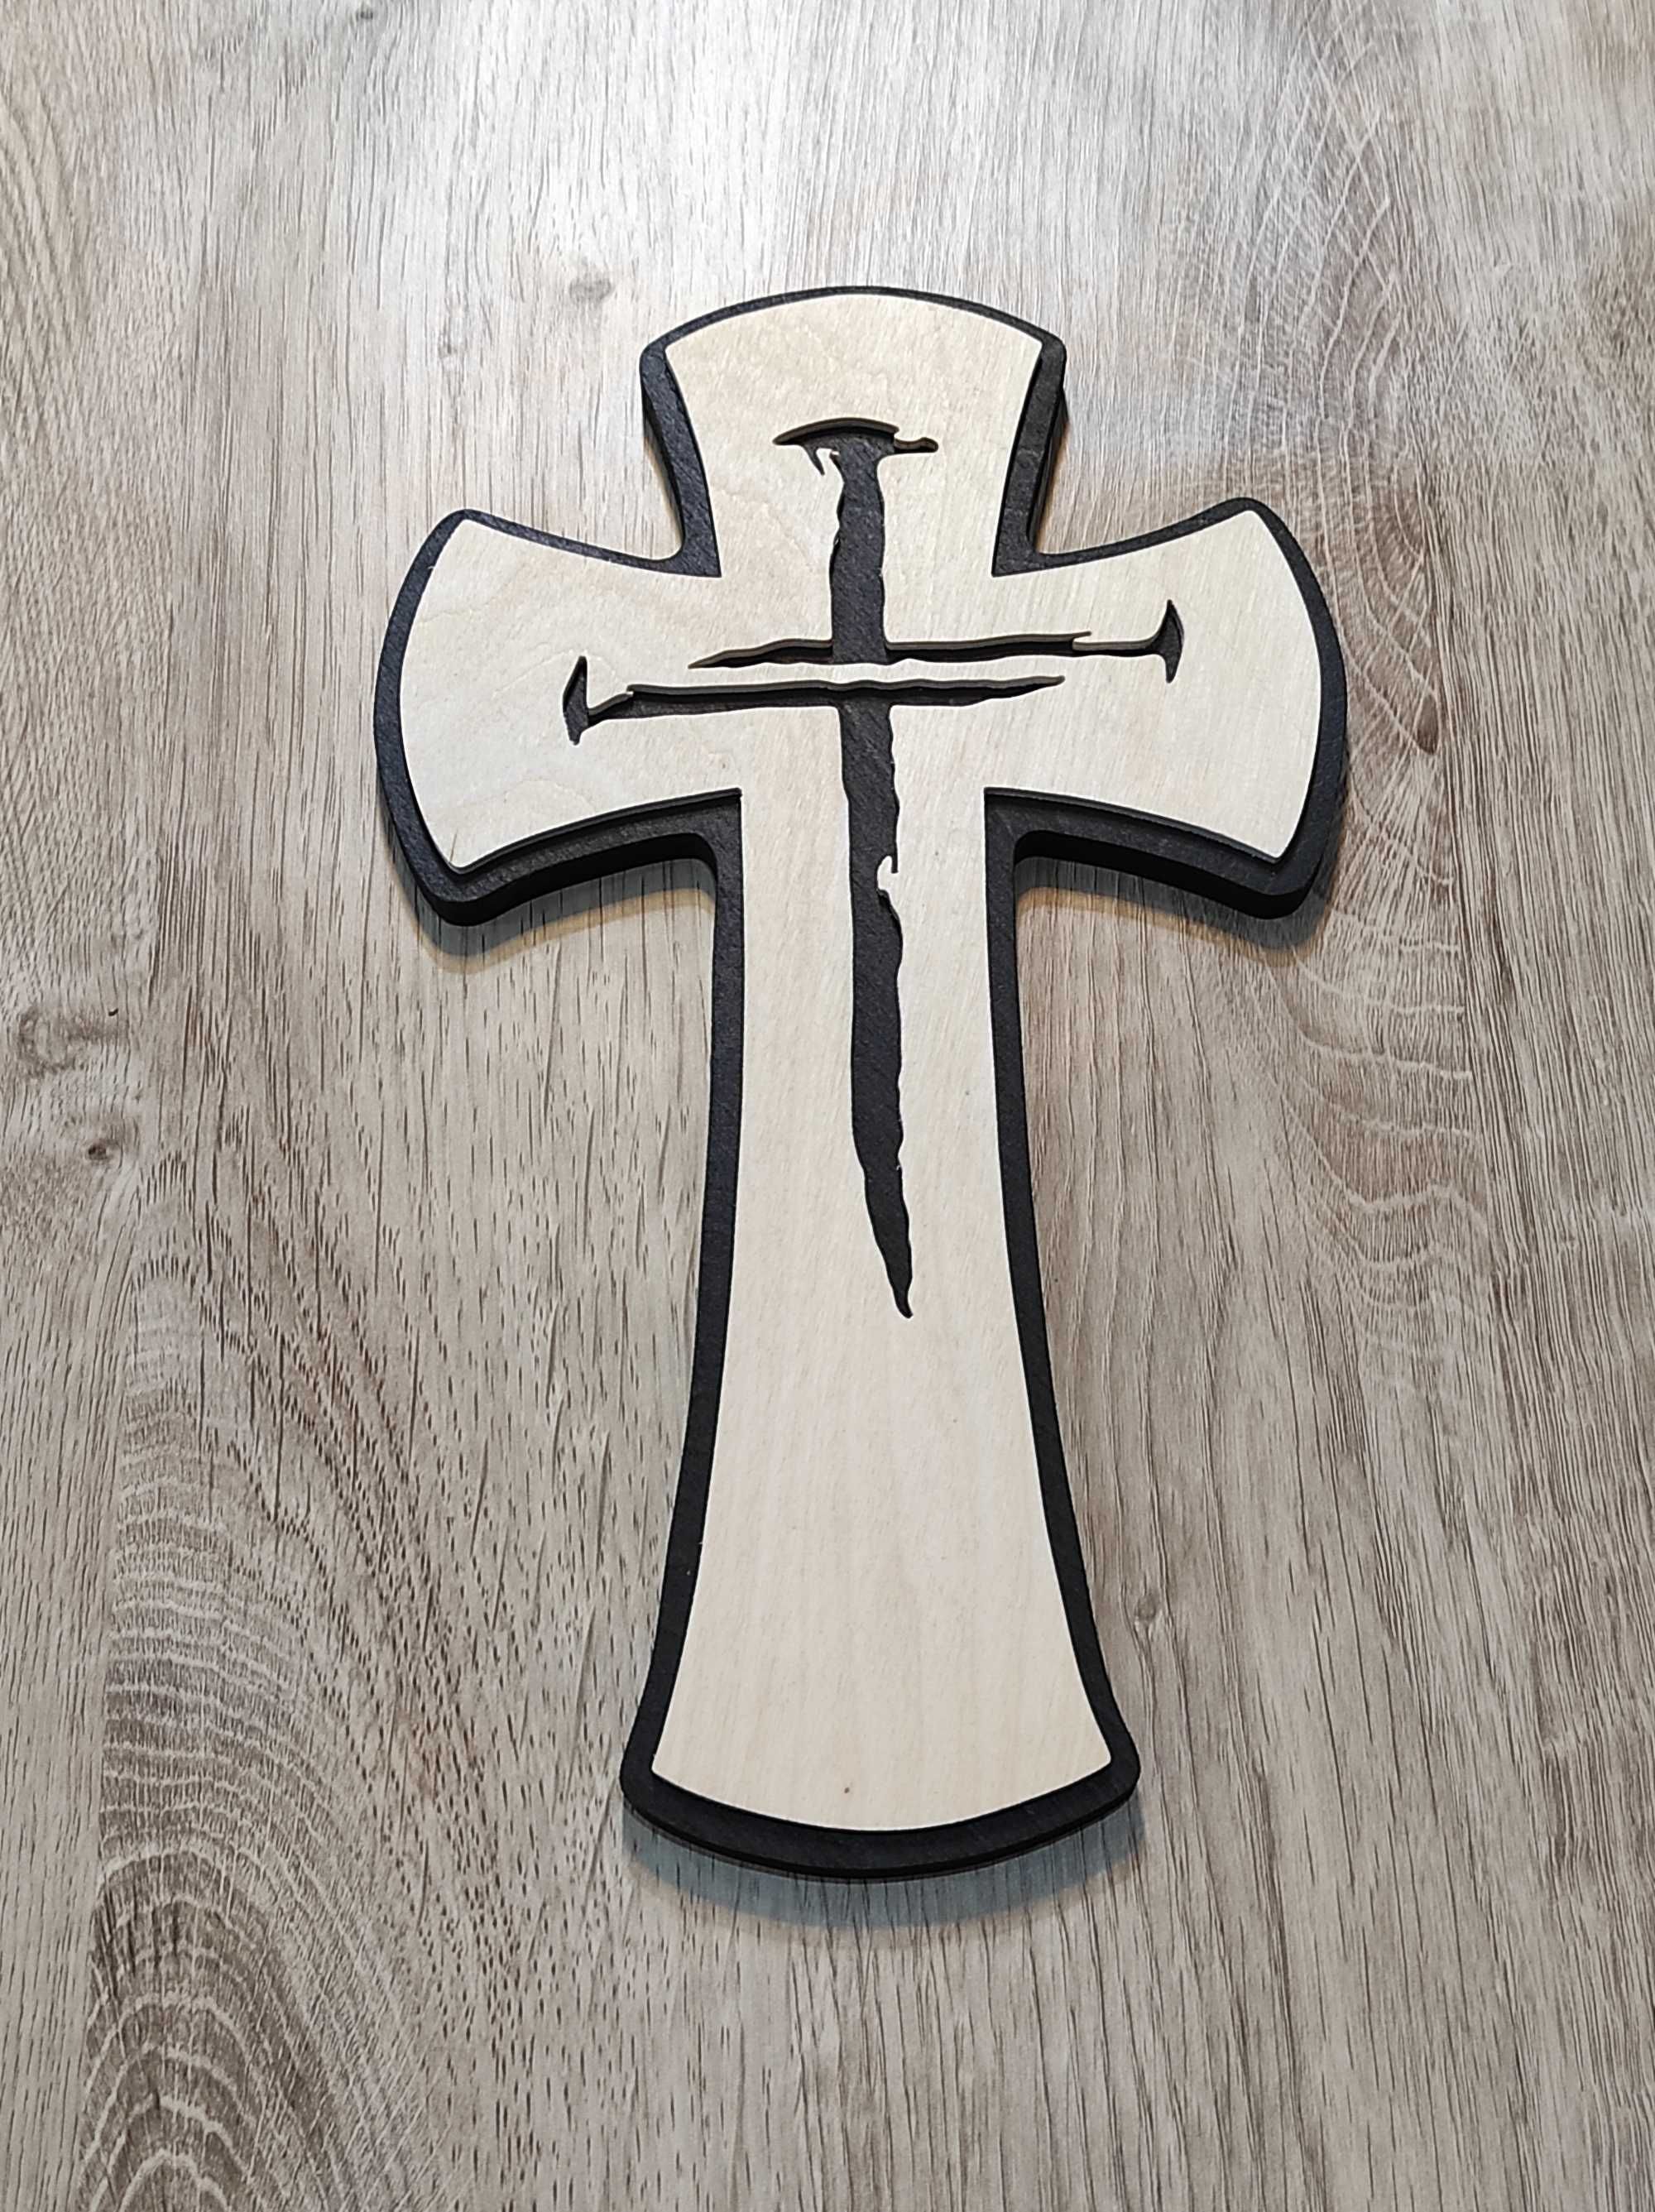 Krzyż drewniany 03 - RĘKODZIEŁO dekoracja z drewna